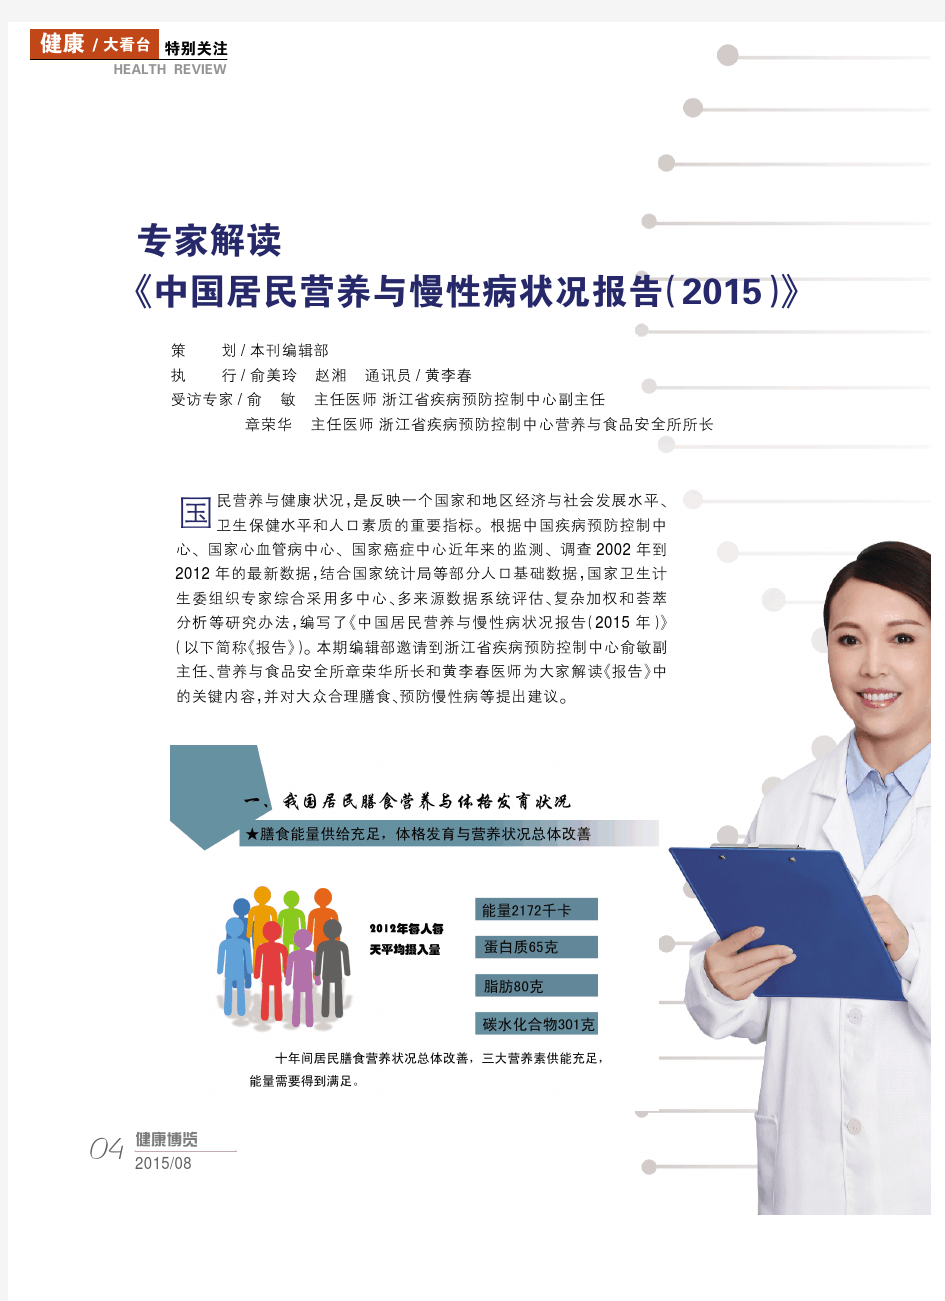 专家解读《中国居民营养与慢性病状况报告(2015)》